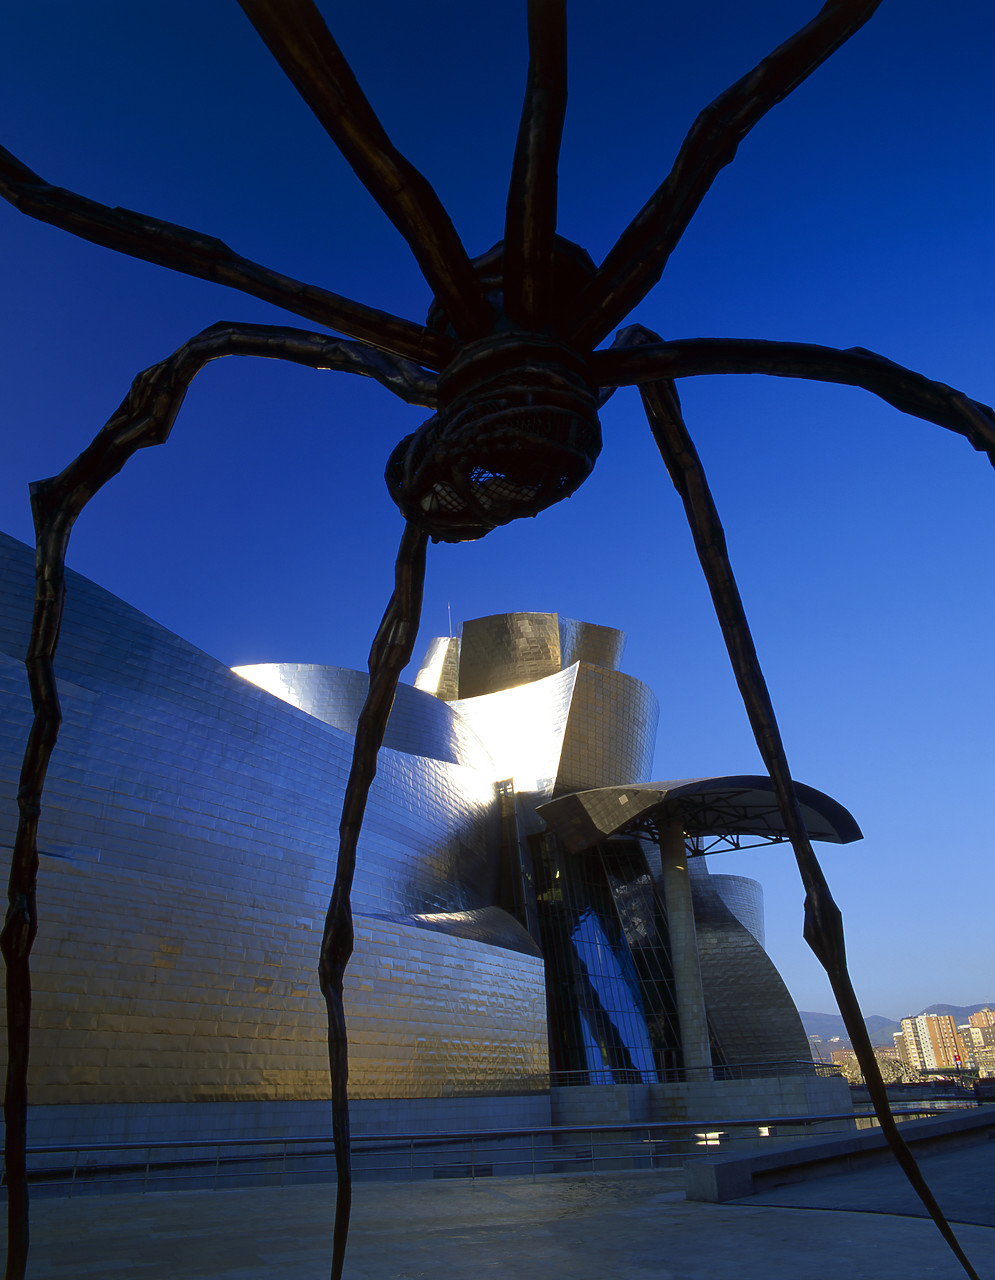 #020025-2 - Guggenheim Museum & Spider Sculpture, Bilbao, Basque Region, Spain